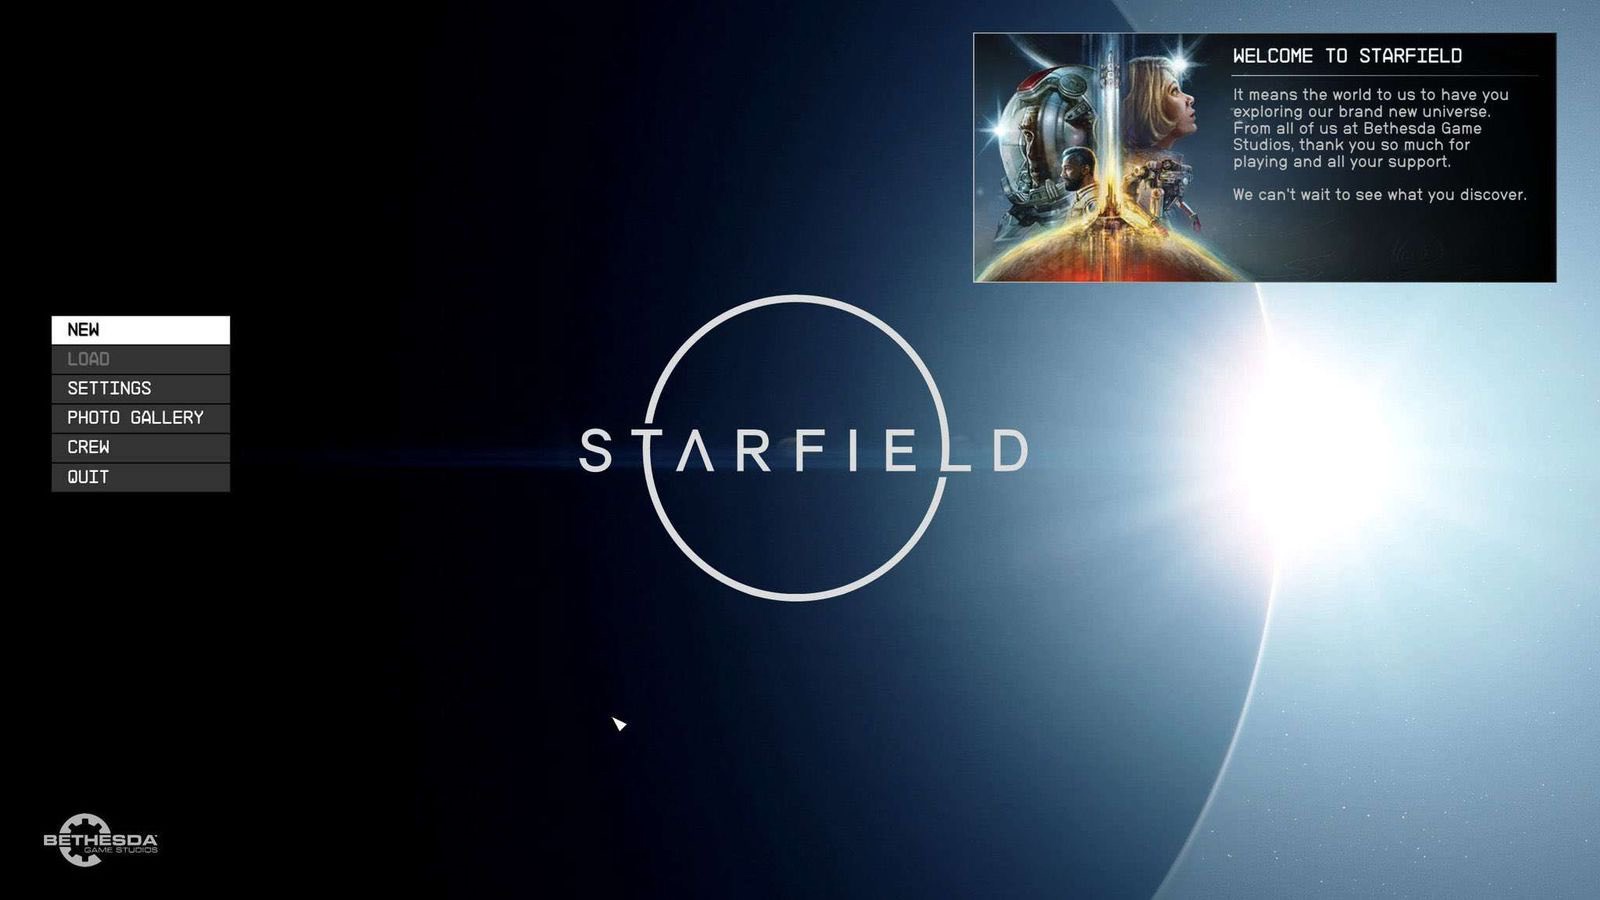 Появились новые скриншоты из Starfield, команду Bethesda "бесят" утечки: с сайта NEWXBOXONE.RU